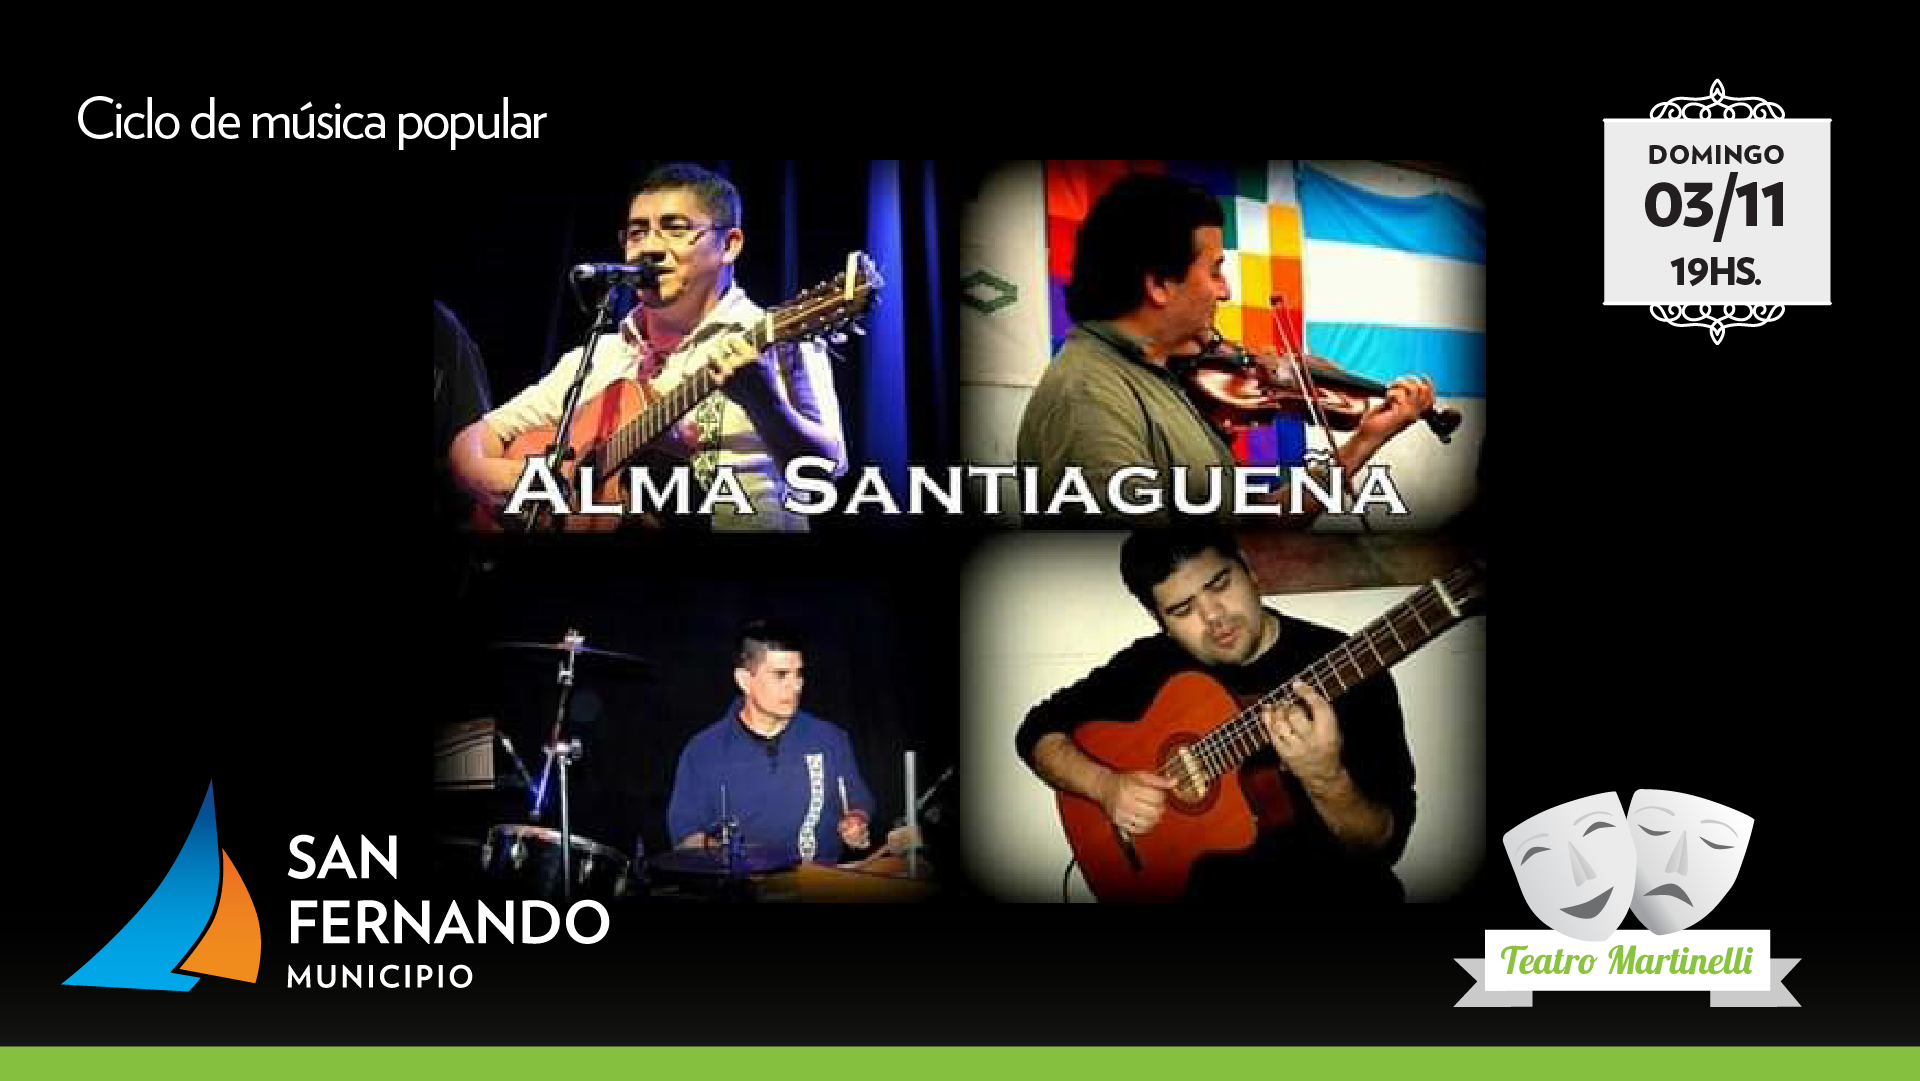  “Alma Santiagueña” se presenta este domingo en el Teatro Martinelli